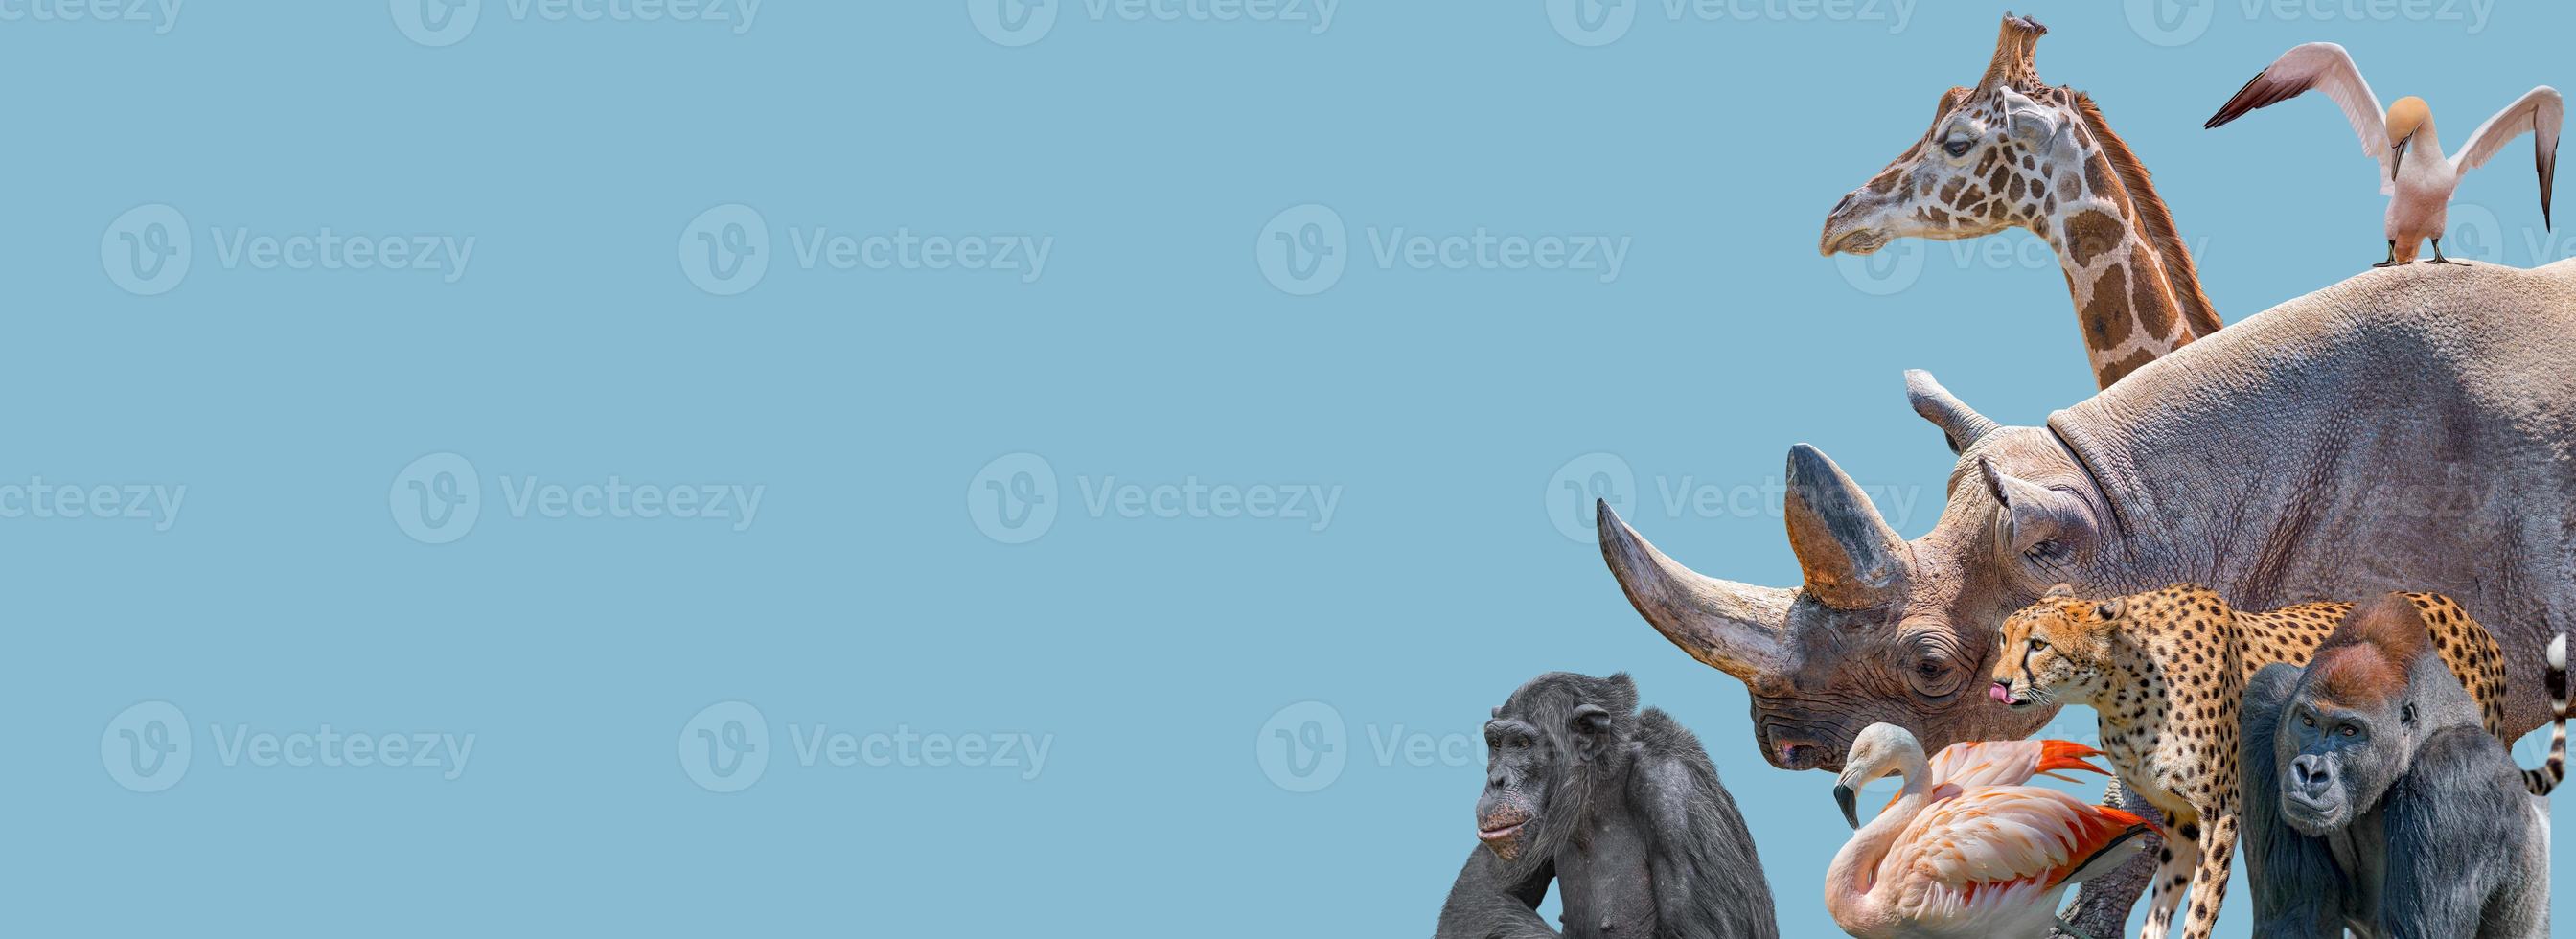 Banner mit gefährdeten Wildtieren in Afrika, Nashörnern, Geparden, Gorillas, Giraffen, Elefanten, Flamingos, Schimpansen auf festem Hintergrund des blauen Himmels mit Kopierraum. Konzept Biodiversität und Naturschutz. foto